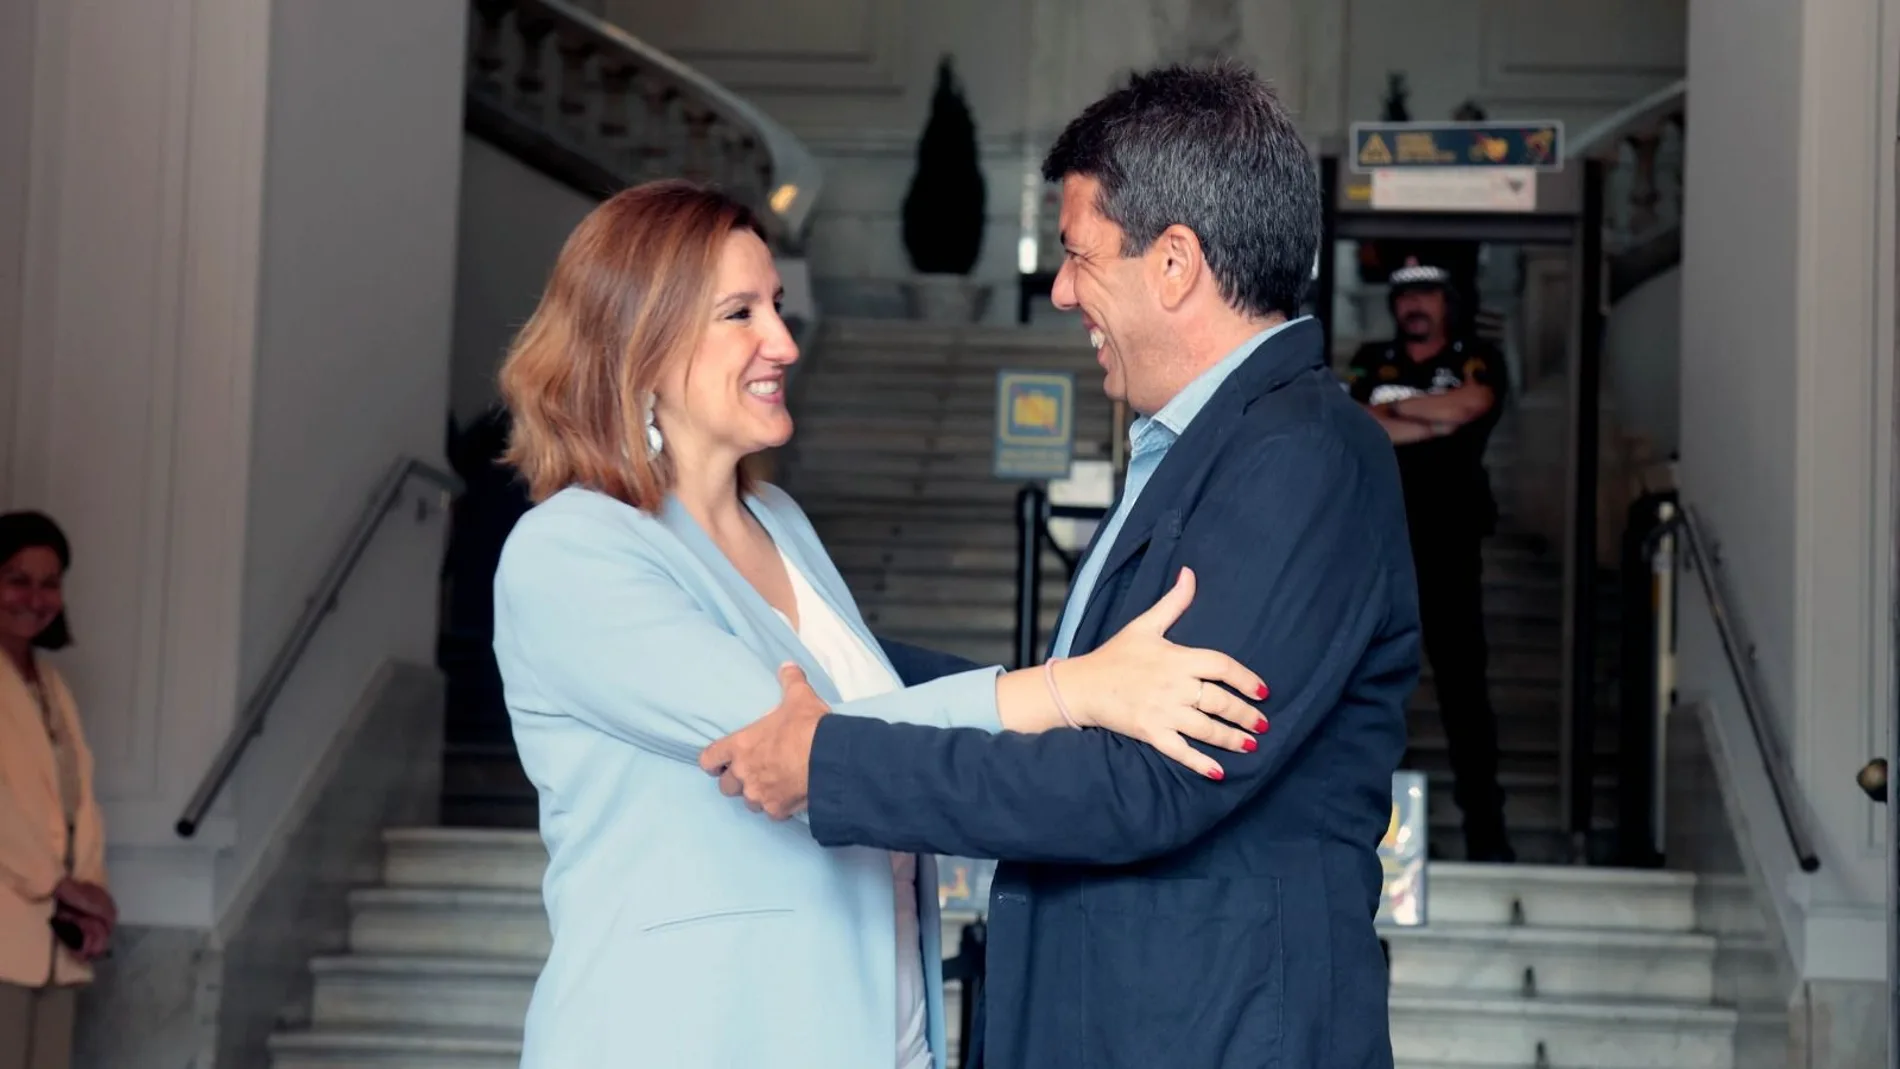 La alcaldesa Catalá ha recibido al presidente de la Diputación de Alicante, Carlos Mazón, a las puertas del Ayuntamiento